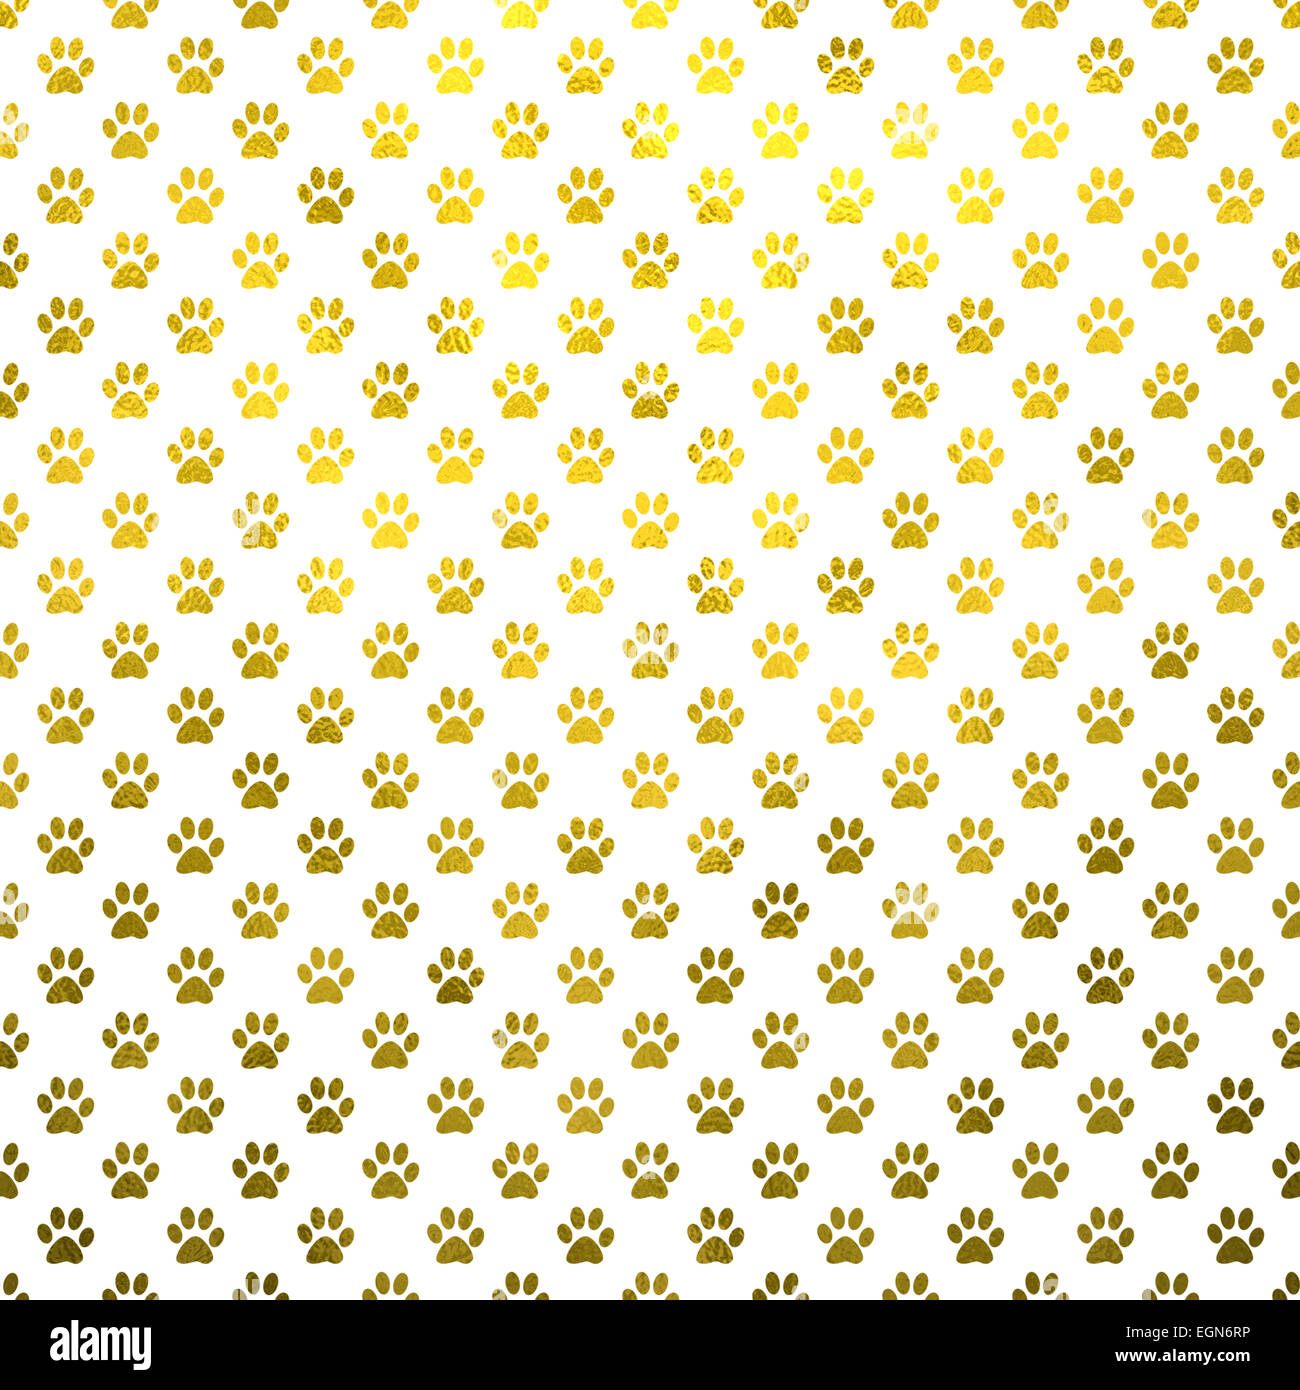 Dog Paws Gold White Metallic Foil Polka Dot Texture Background Pattern Stock Photo